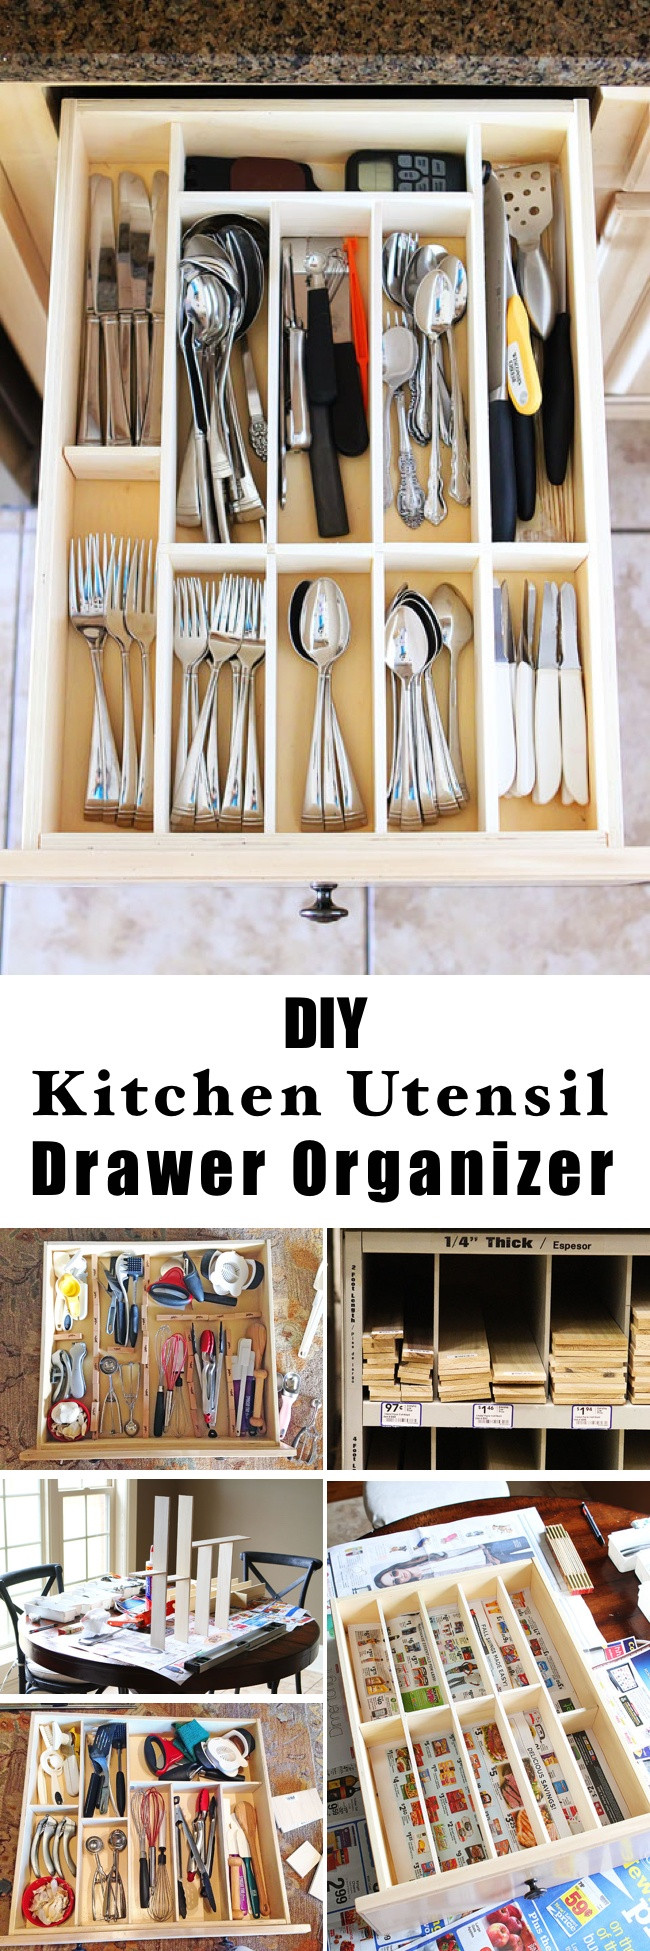 Best ideas about Utensil Drawer Organizer DIY
. Save or Pin 15 Innovative DIY Kitchen Organization & Storage Ideas Now.